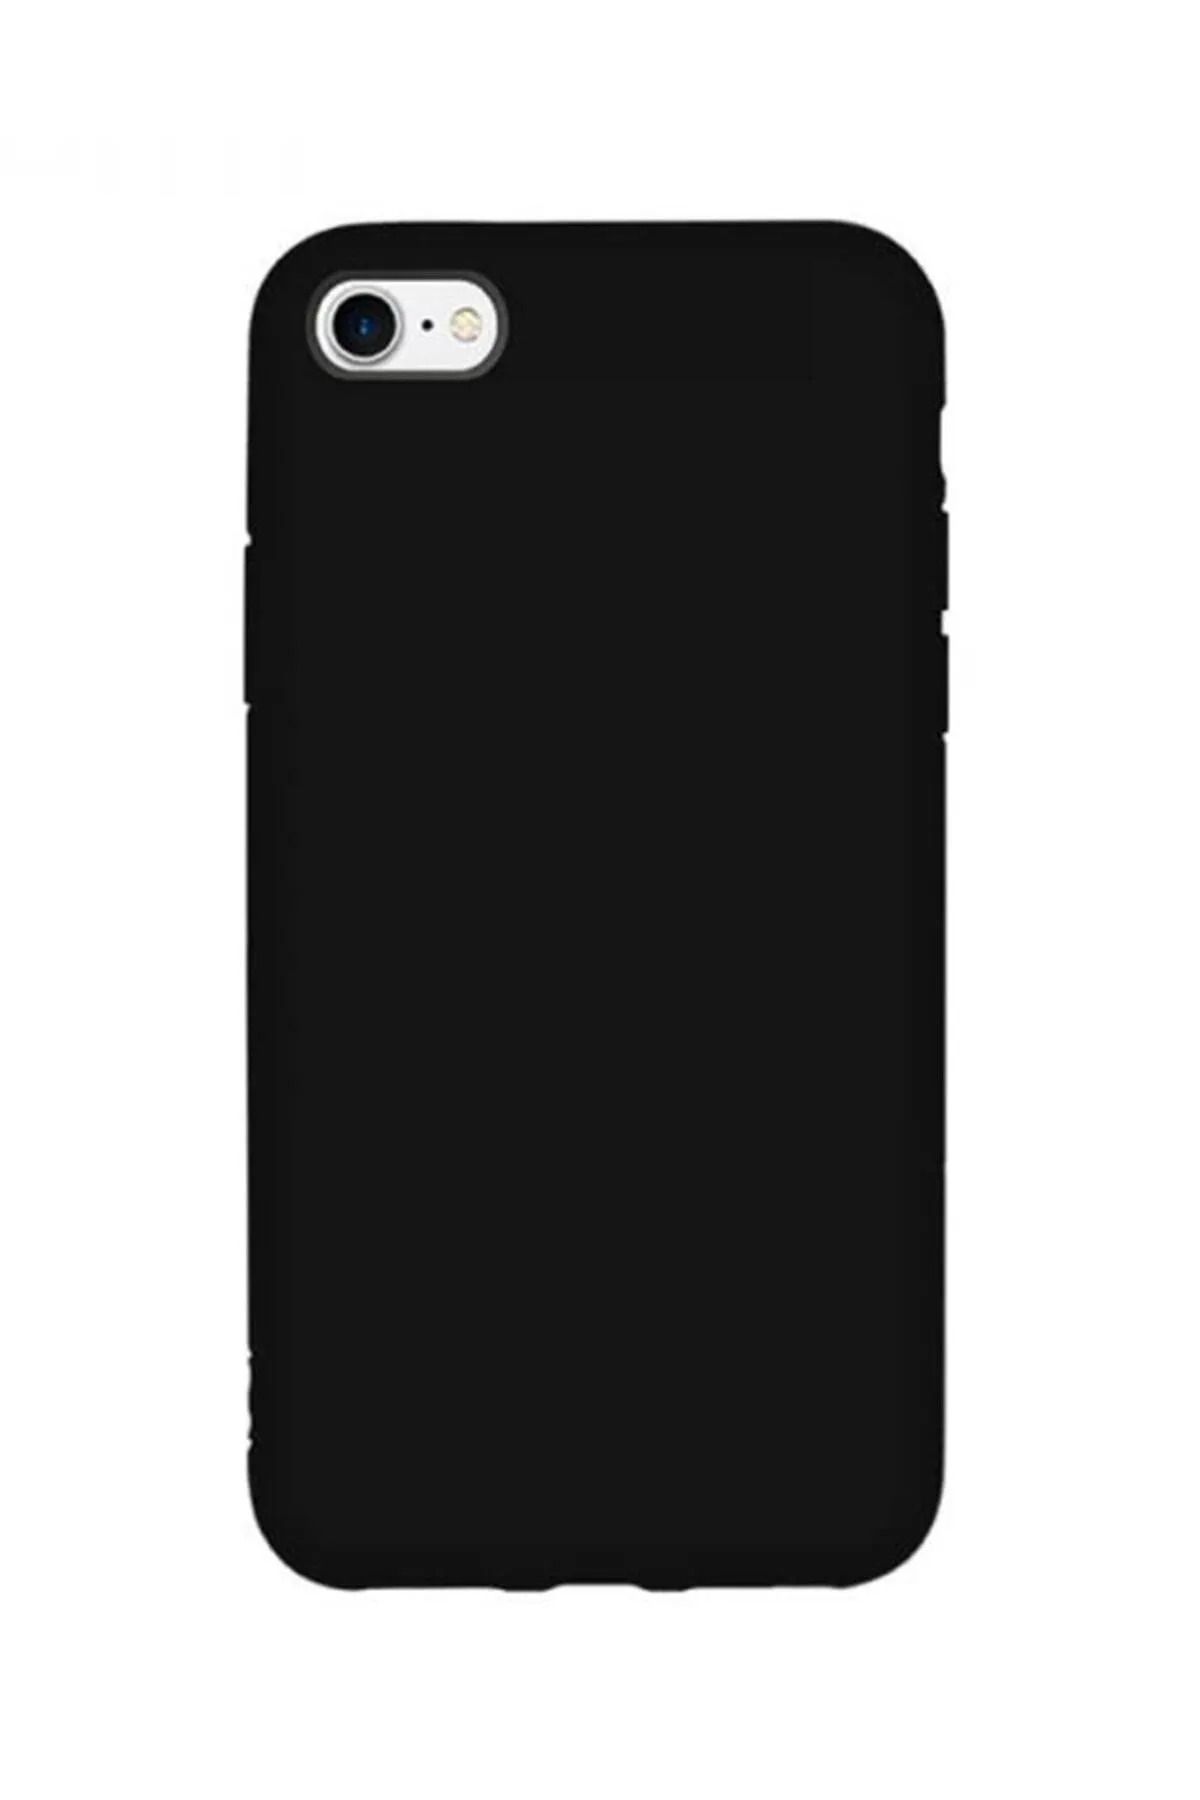 KVK PRİVACY Apple Iphone 7 / 8 / Se 2020 Uyumlu Içi Kadife Lansman Silikon Kılıf Kapak Siyah